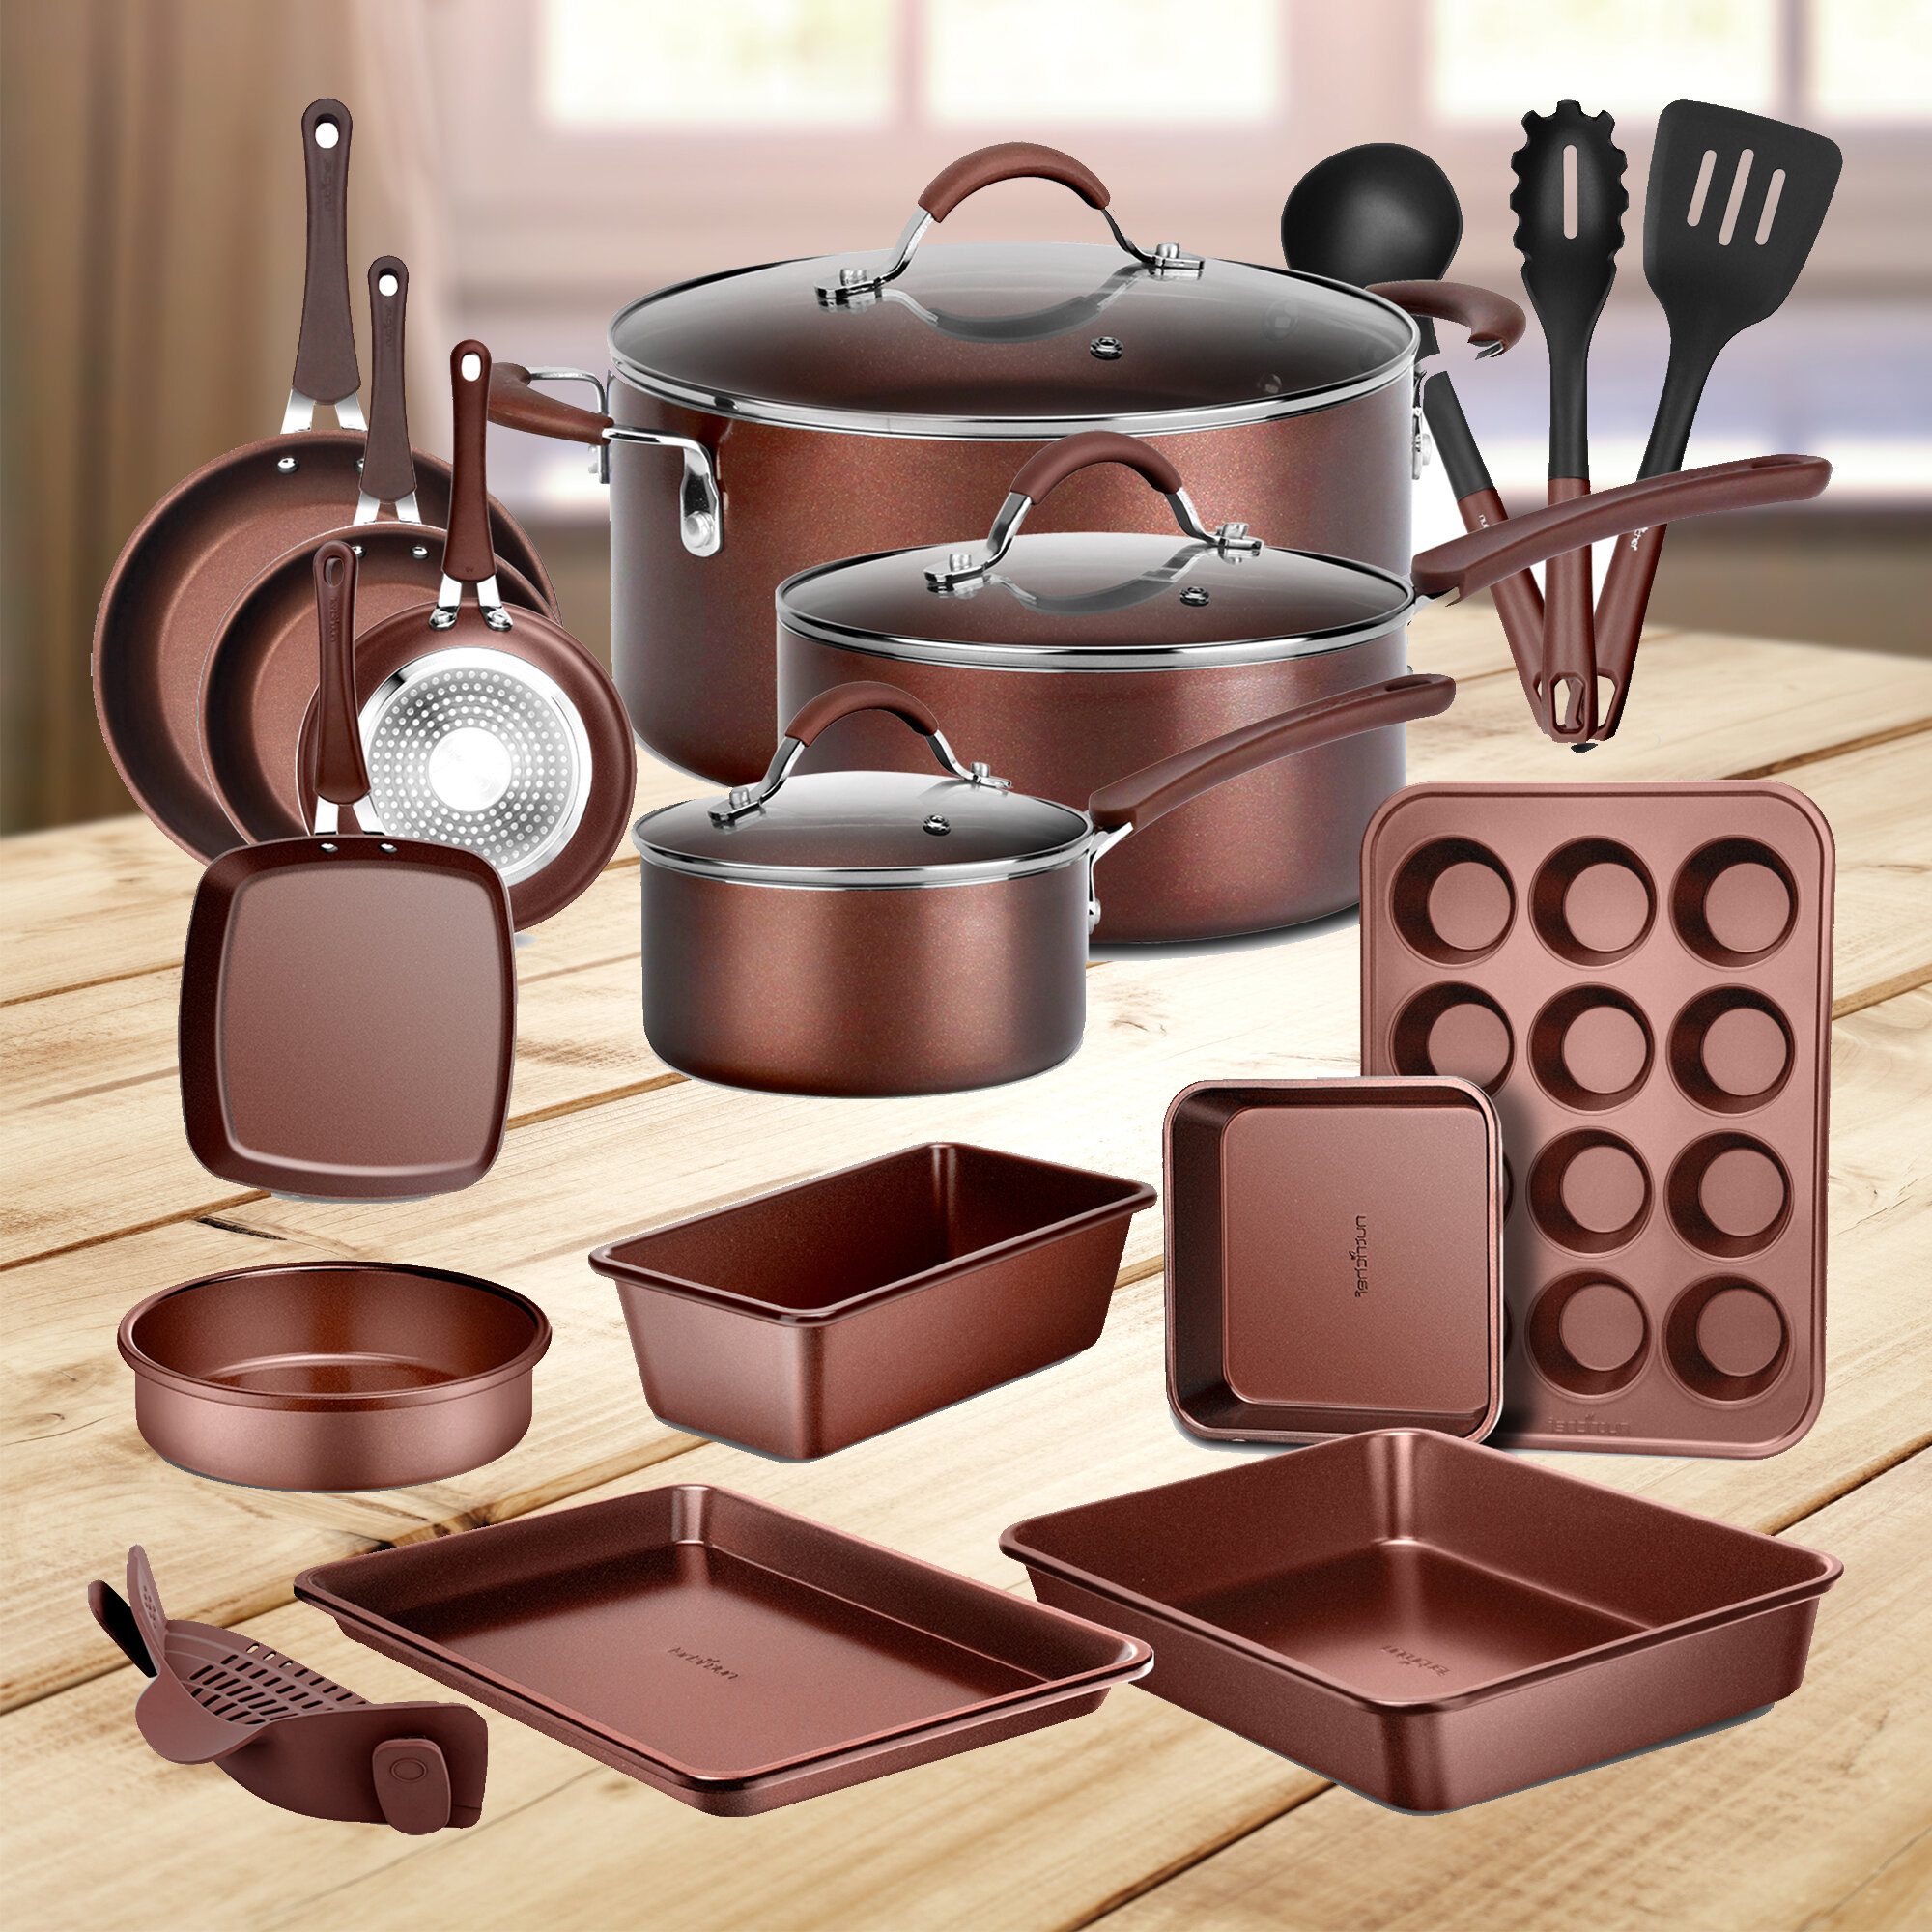 Caannasweis-20 Pieces Nonstick Cookware Sets & Reviews